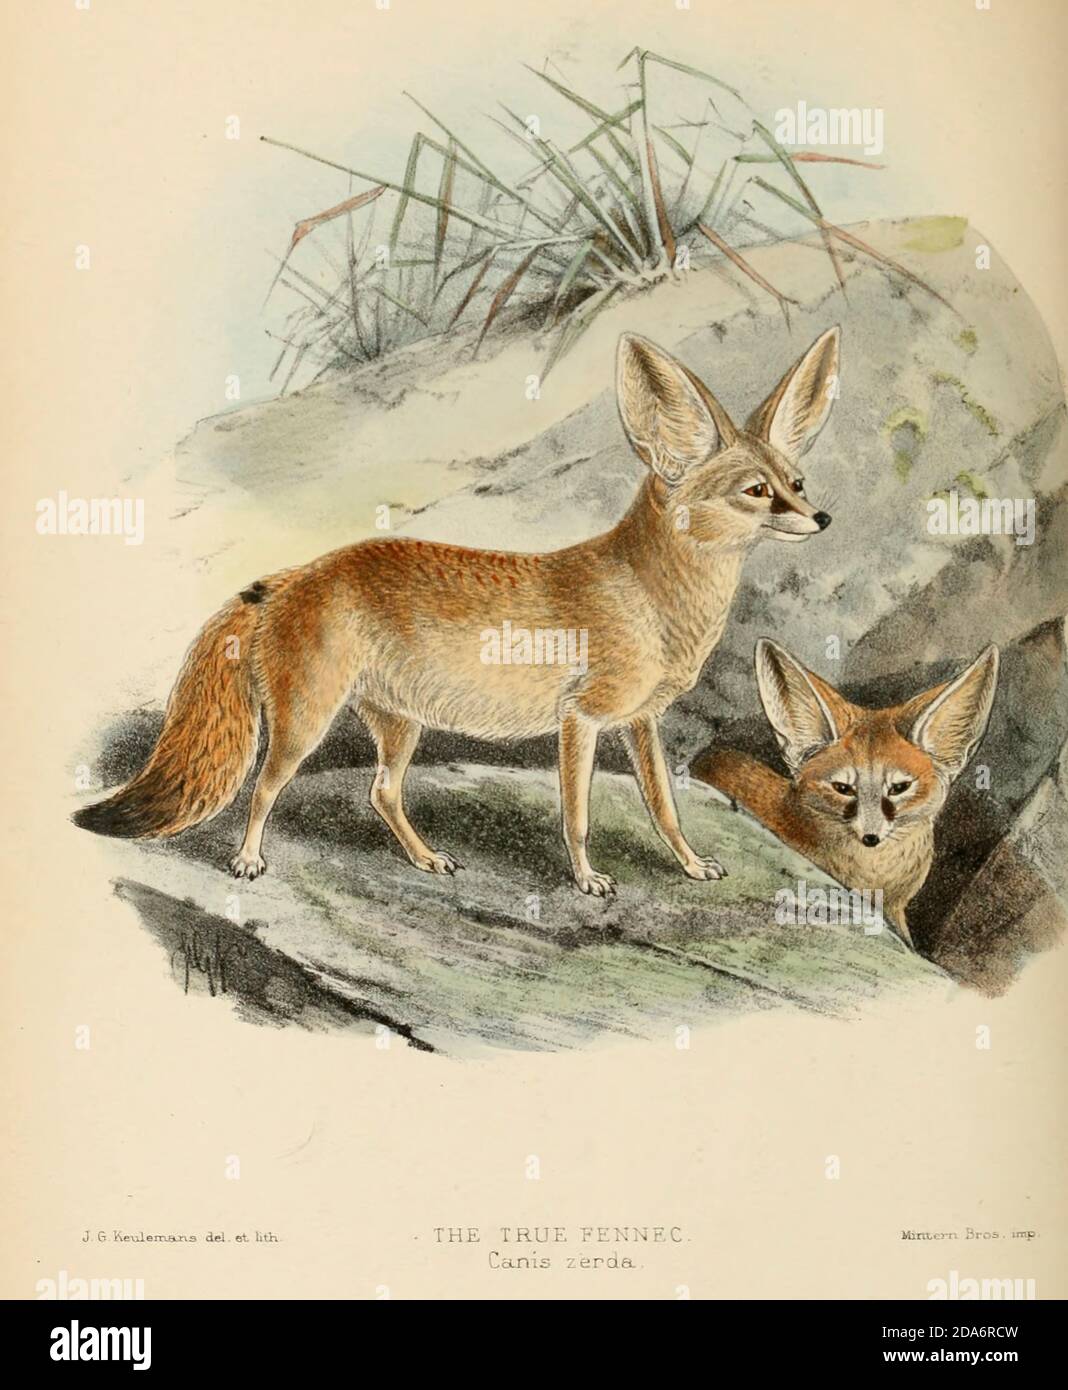 Le renard Fennec (Vulpes zerda [Canis zerda]) est un petit renard  crépusculaire originaire du désert du Sahara et de la péninsule du Sinaï.  Sa caractéristique la plus distinctive est ses oreilles exceptionnellement